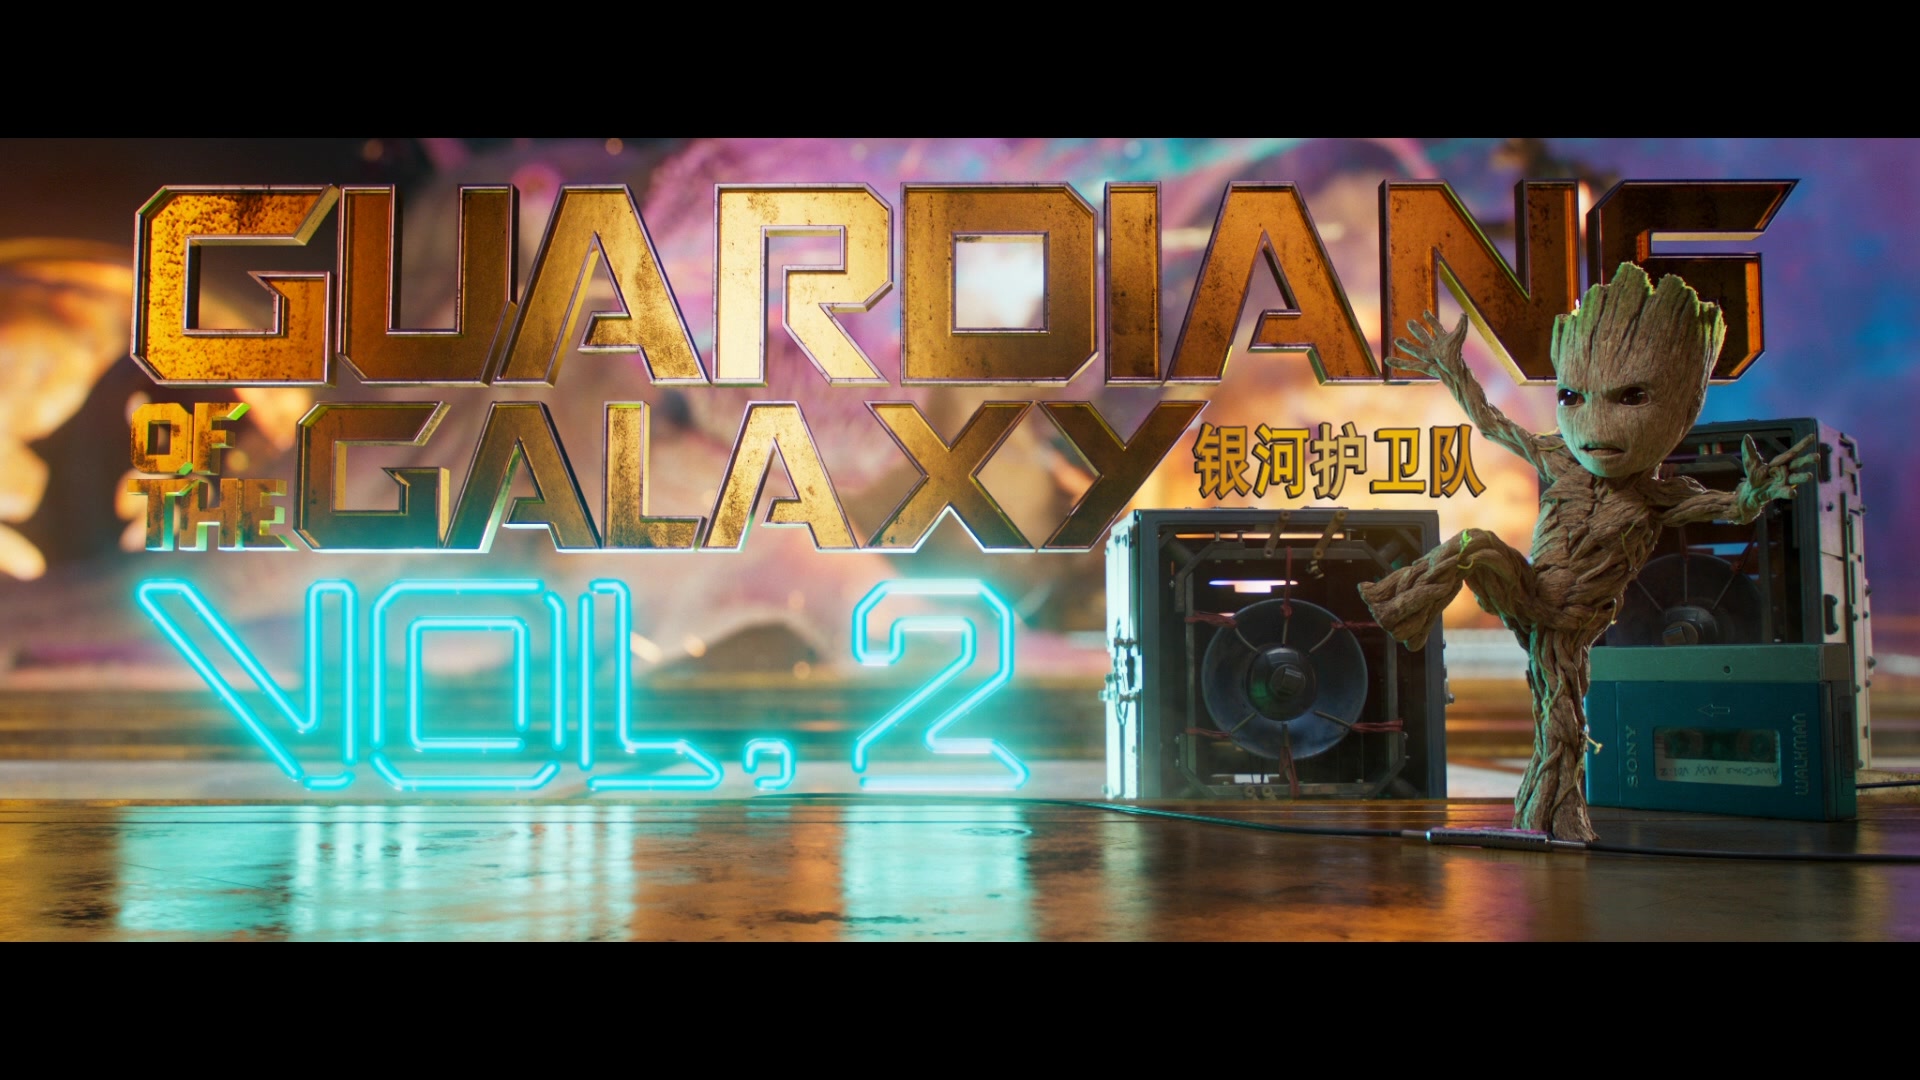 银河护卫队2【IMAX版3D原盘国语中字 DIY次世代国语/国配/双语/注释特效字幕】 Guardians of the Galaxy Vol 2 2017 1080p 3D IMAX Blu-ray DTS-HD MA 7.1-FiNalHD@HDSky [43.71 GB]-9.jpg